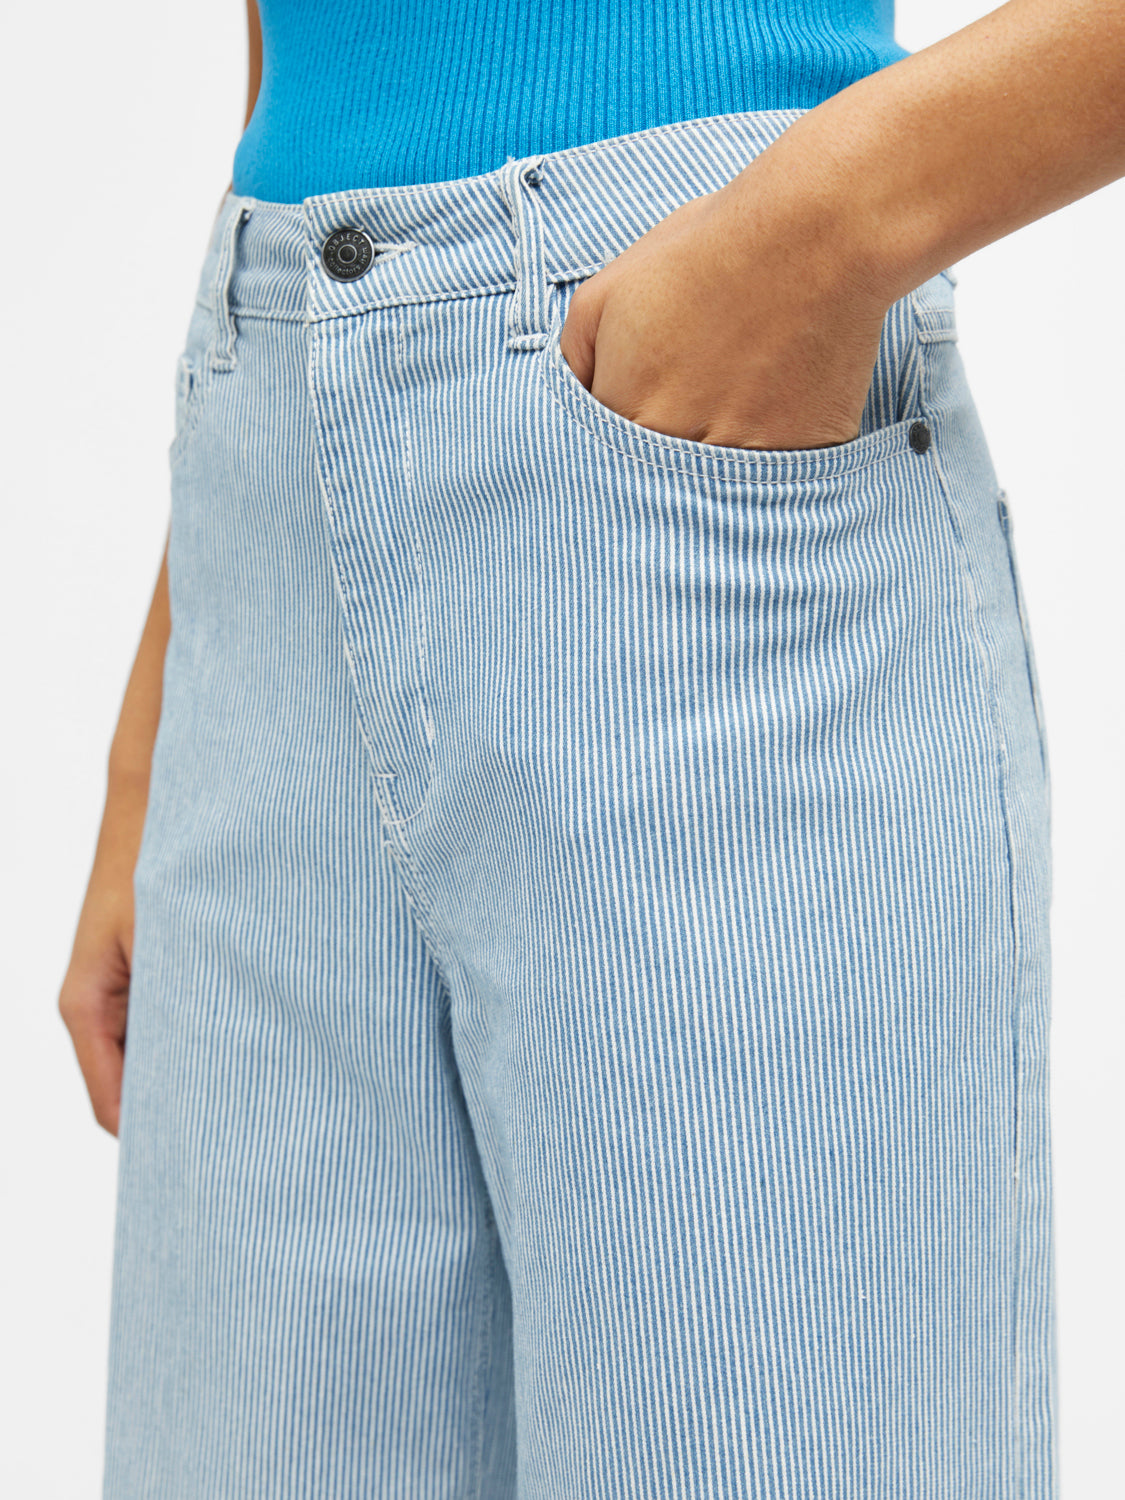 OBJMOJI Jeans - Light Blue Denim